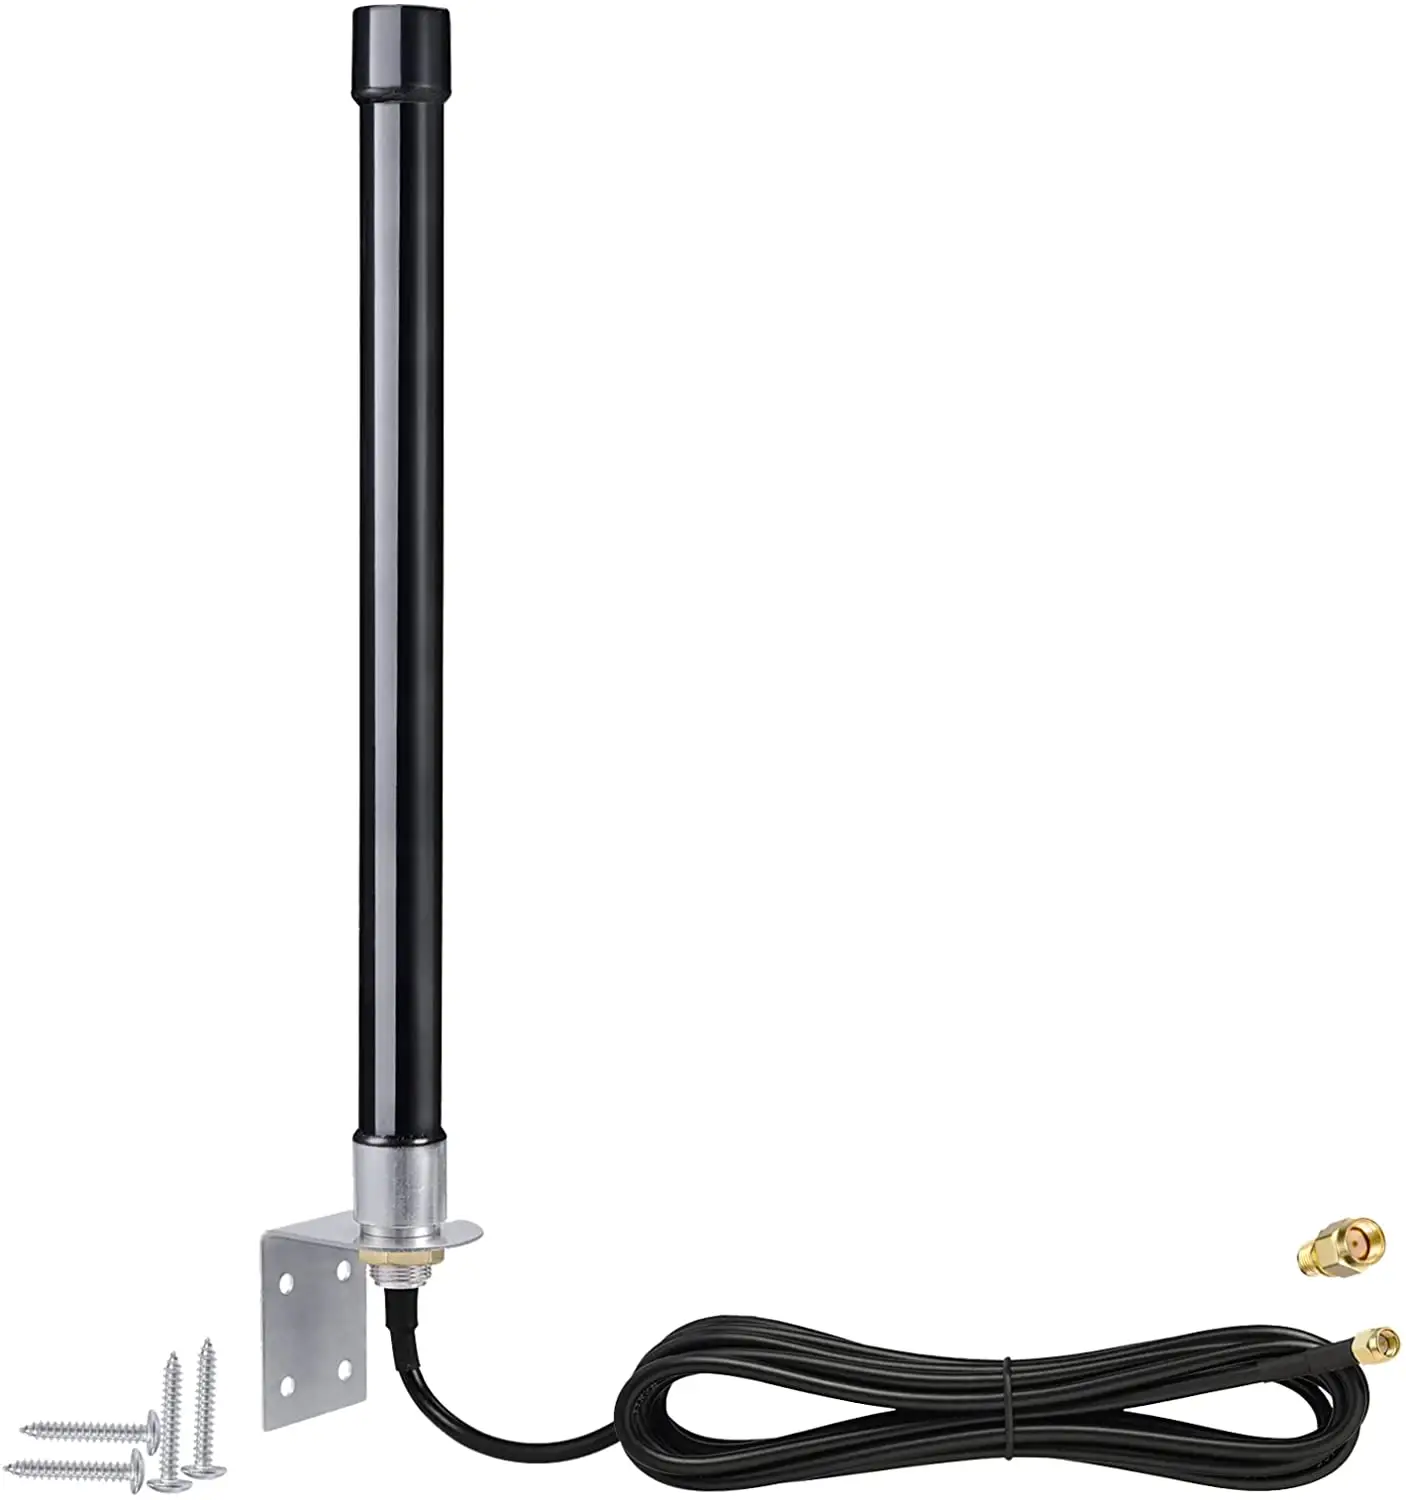 Bingfu 4 аппарат не привязан к оператору сотовой связи антенна на открытом воздухе 5dBi SMA/армированным пластиком SMA водонепроницаемый волоконно-оптические антенны с 3 м кабель для шлюза камера слежения